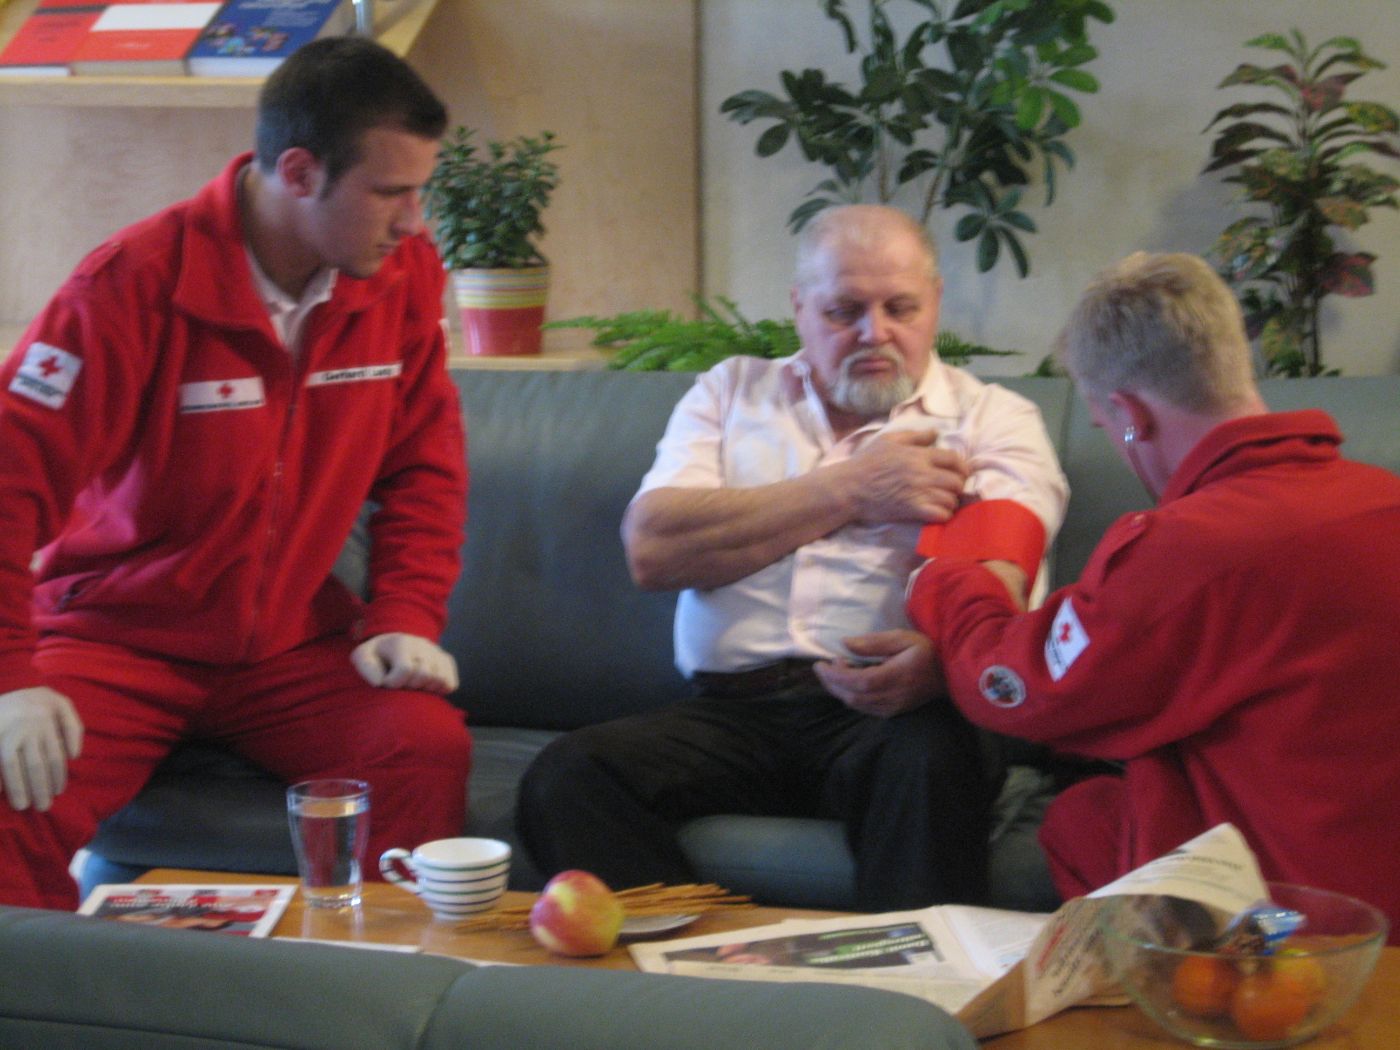 Zwei Zivildiener und älterer Mann, einer der beiden Zivildiener misst den Blutdruck des älteren Mannes